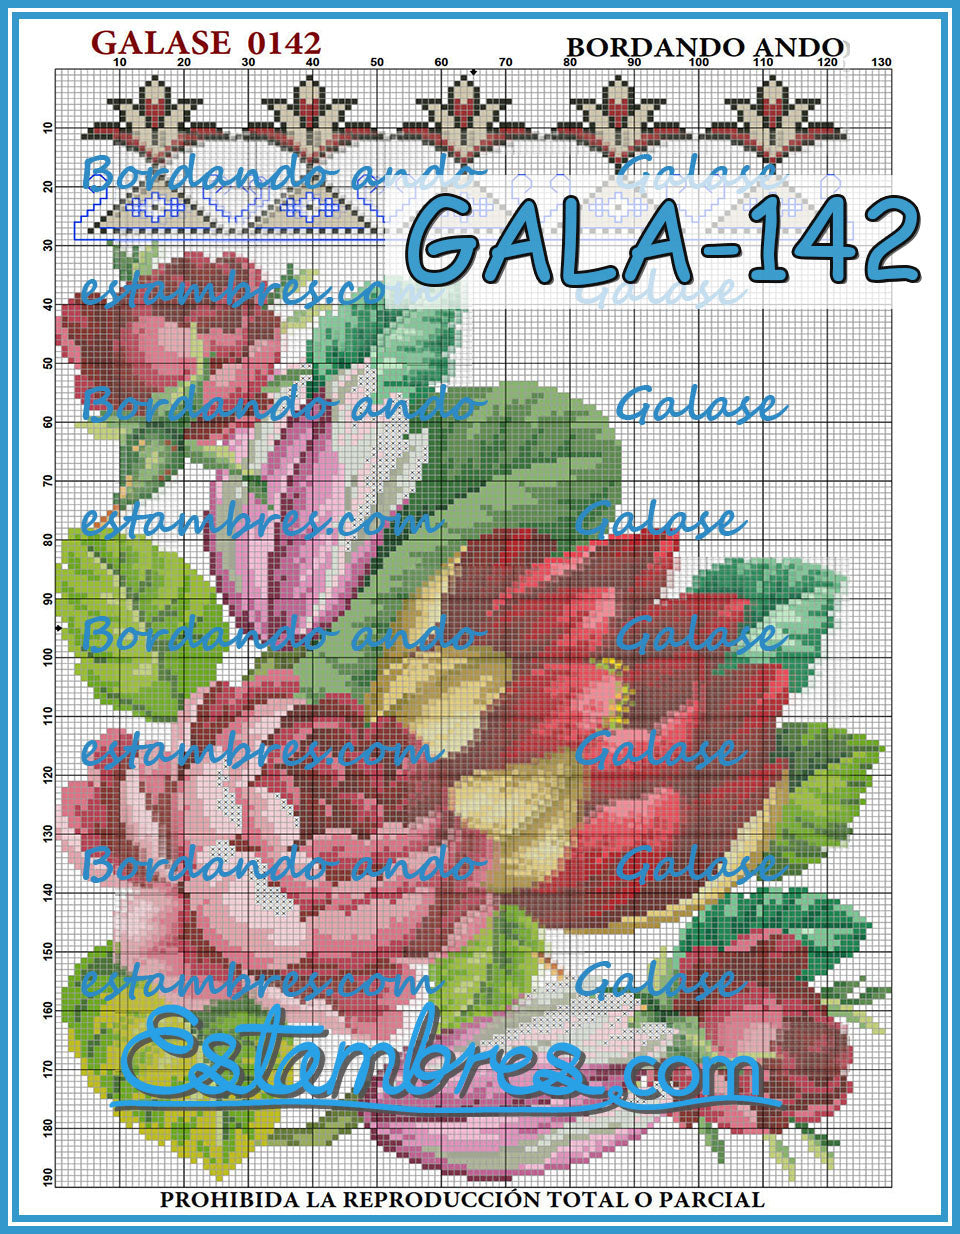 GALASE [141-210] - 3 of 7